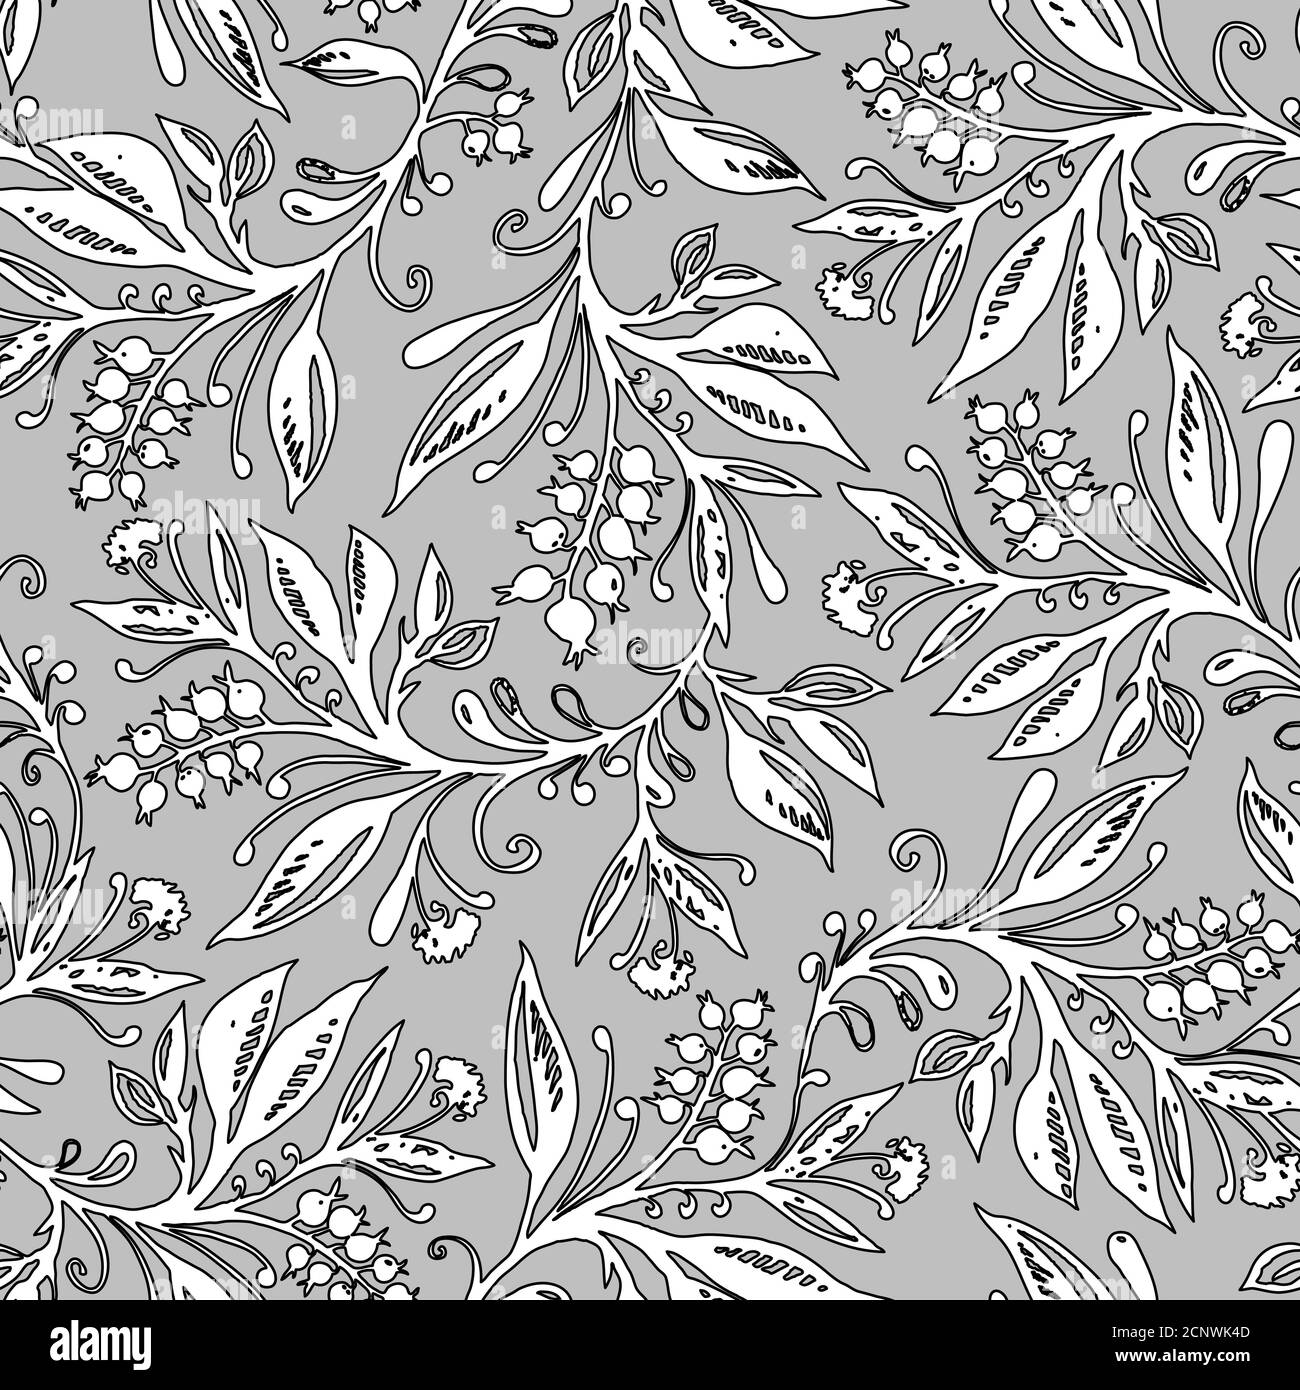 Florales Nahtloses Muster mit Blättern und Beeren in Graustufen. Handzeichnung. Hintergrund für Titel, Blog, Dekoration. Design für Tapeten, Textilien, Stoffe. Stock Vektor